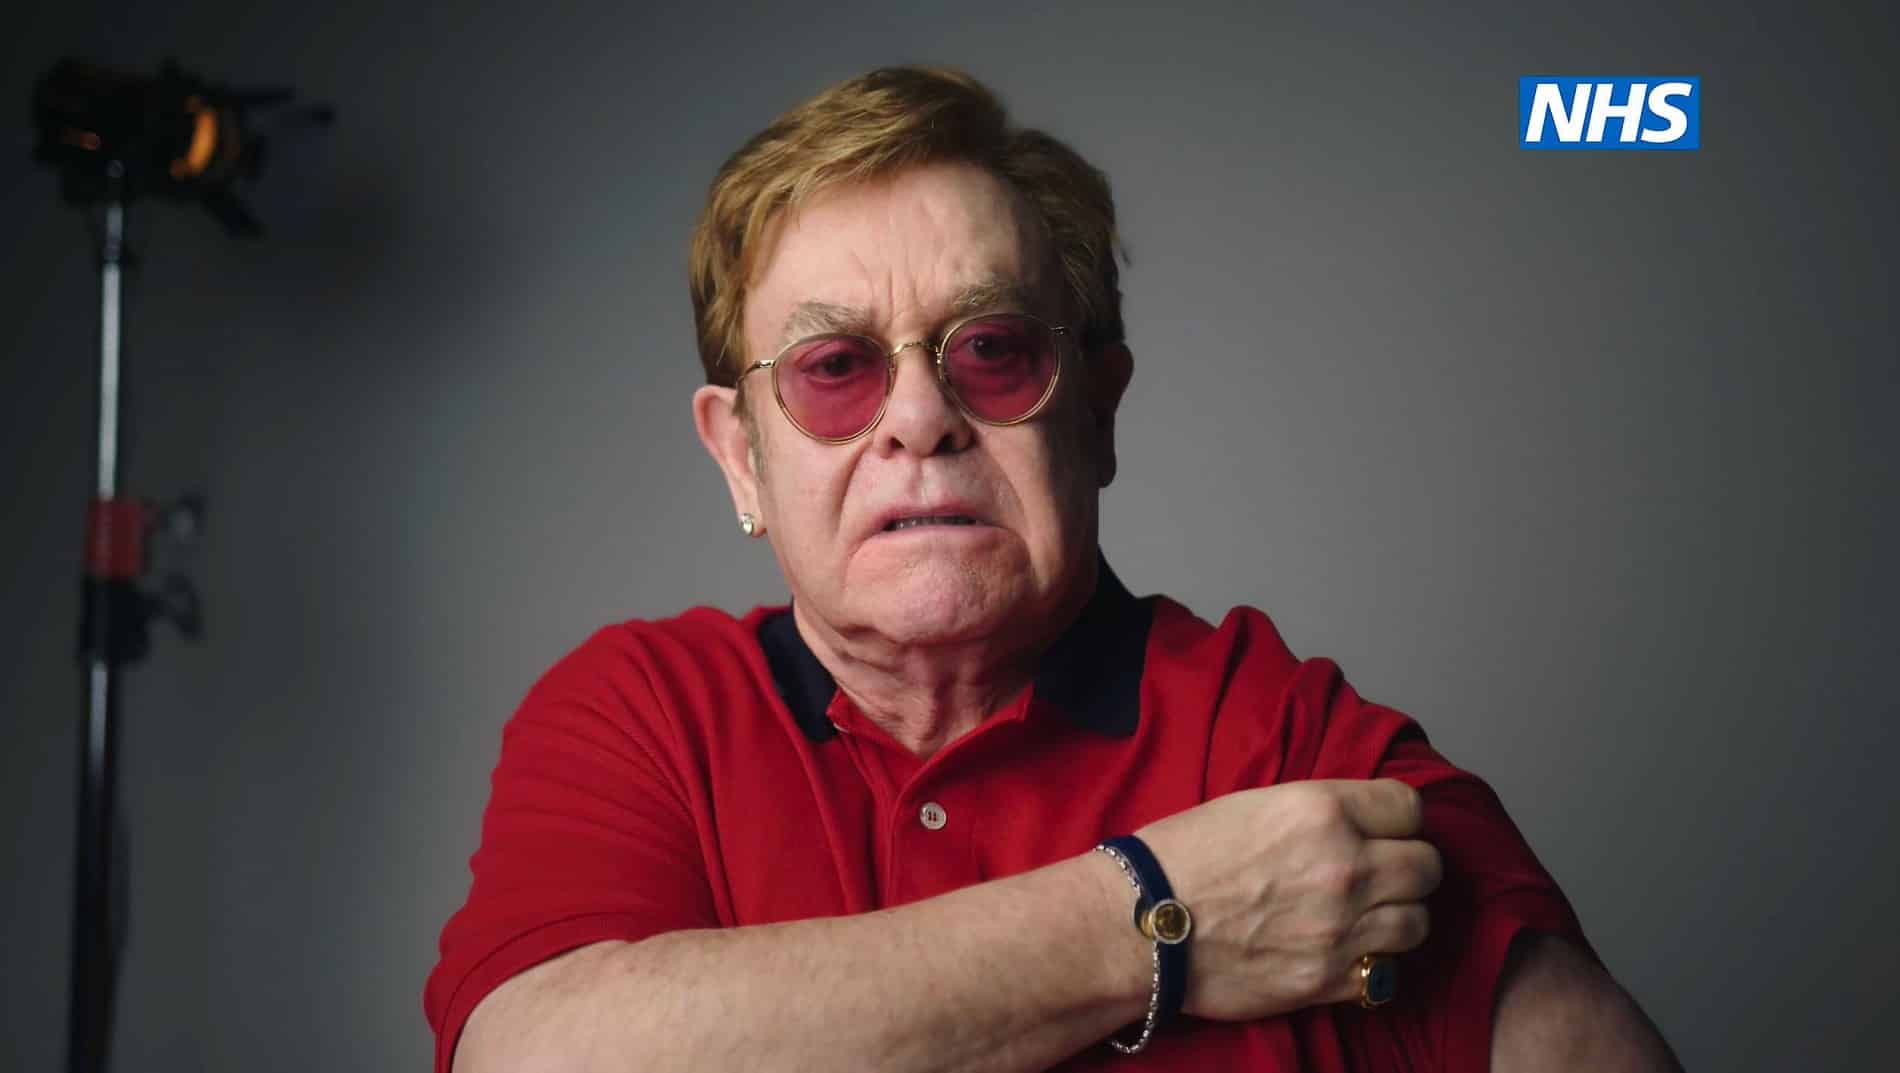  Elton John y Michael Caine promocionan la vacuna Corona